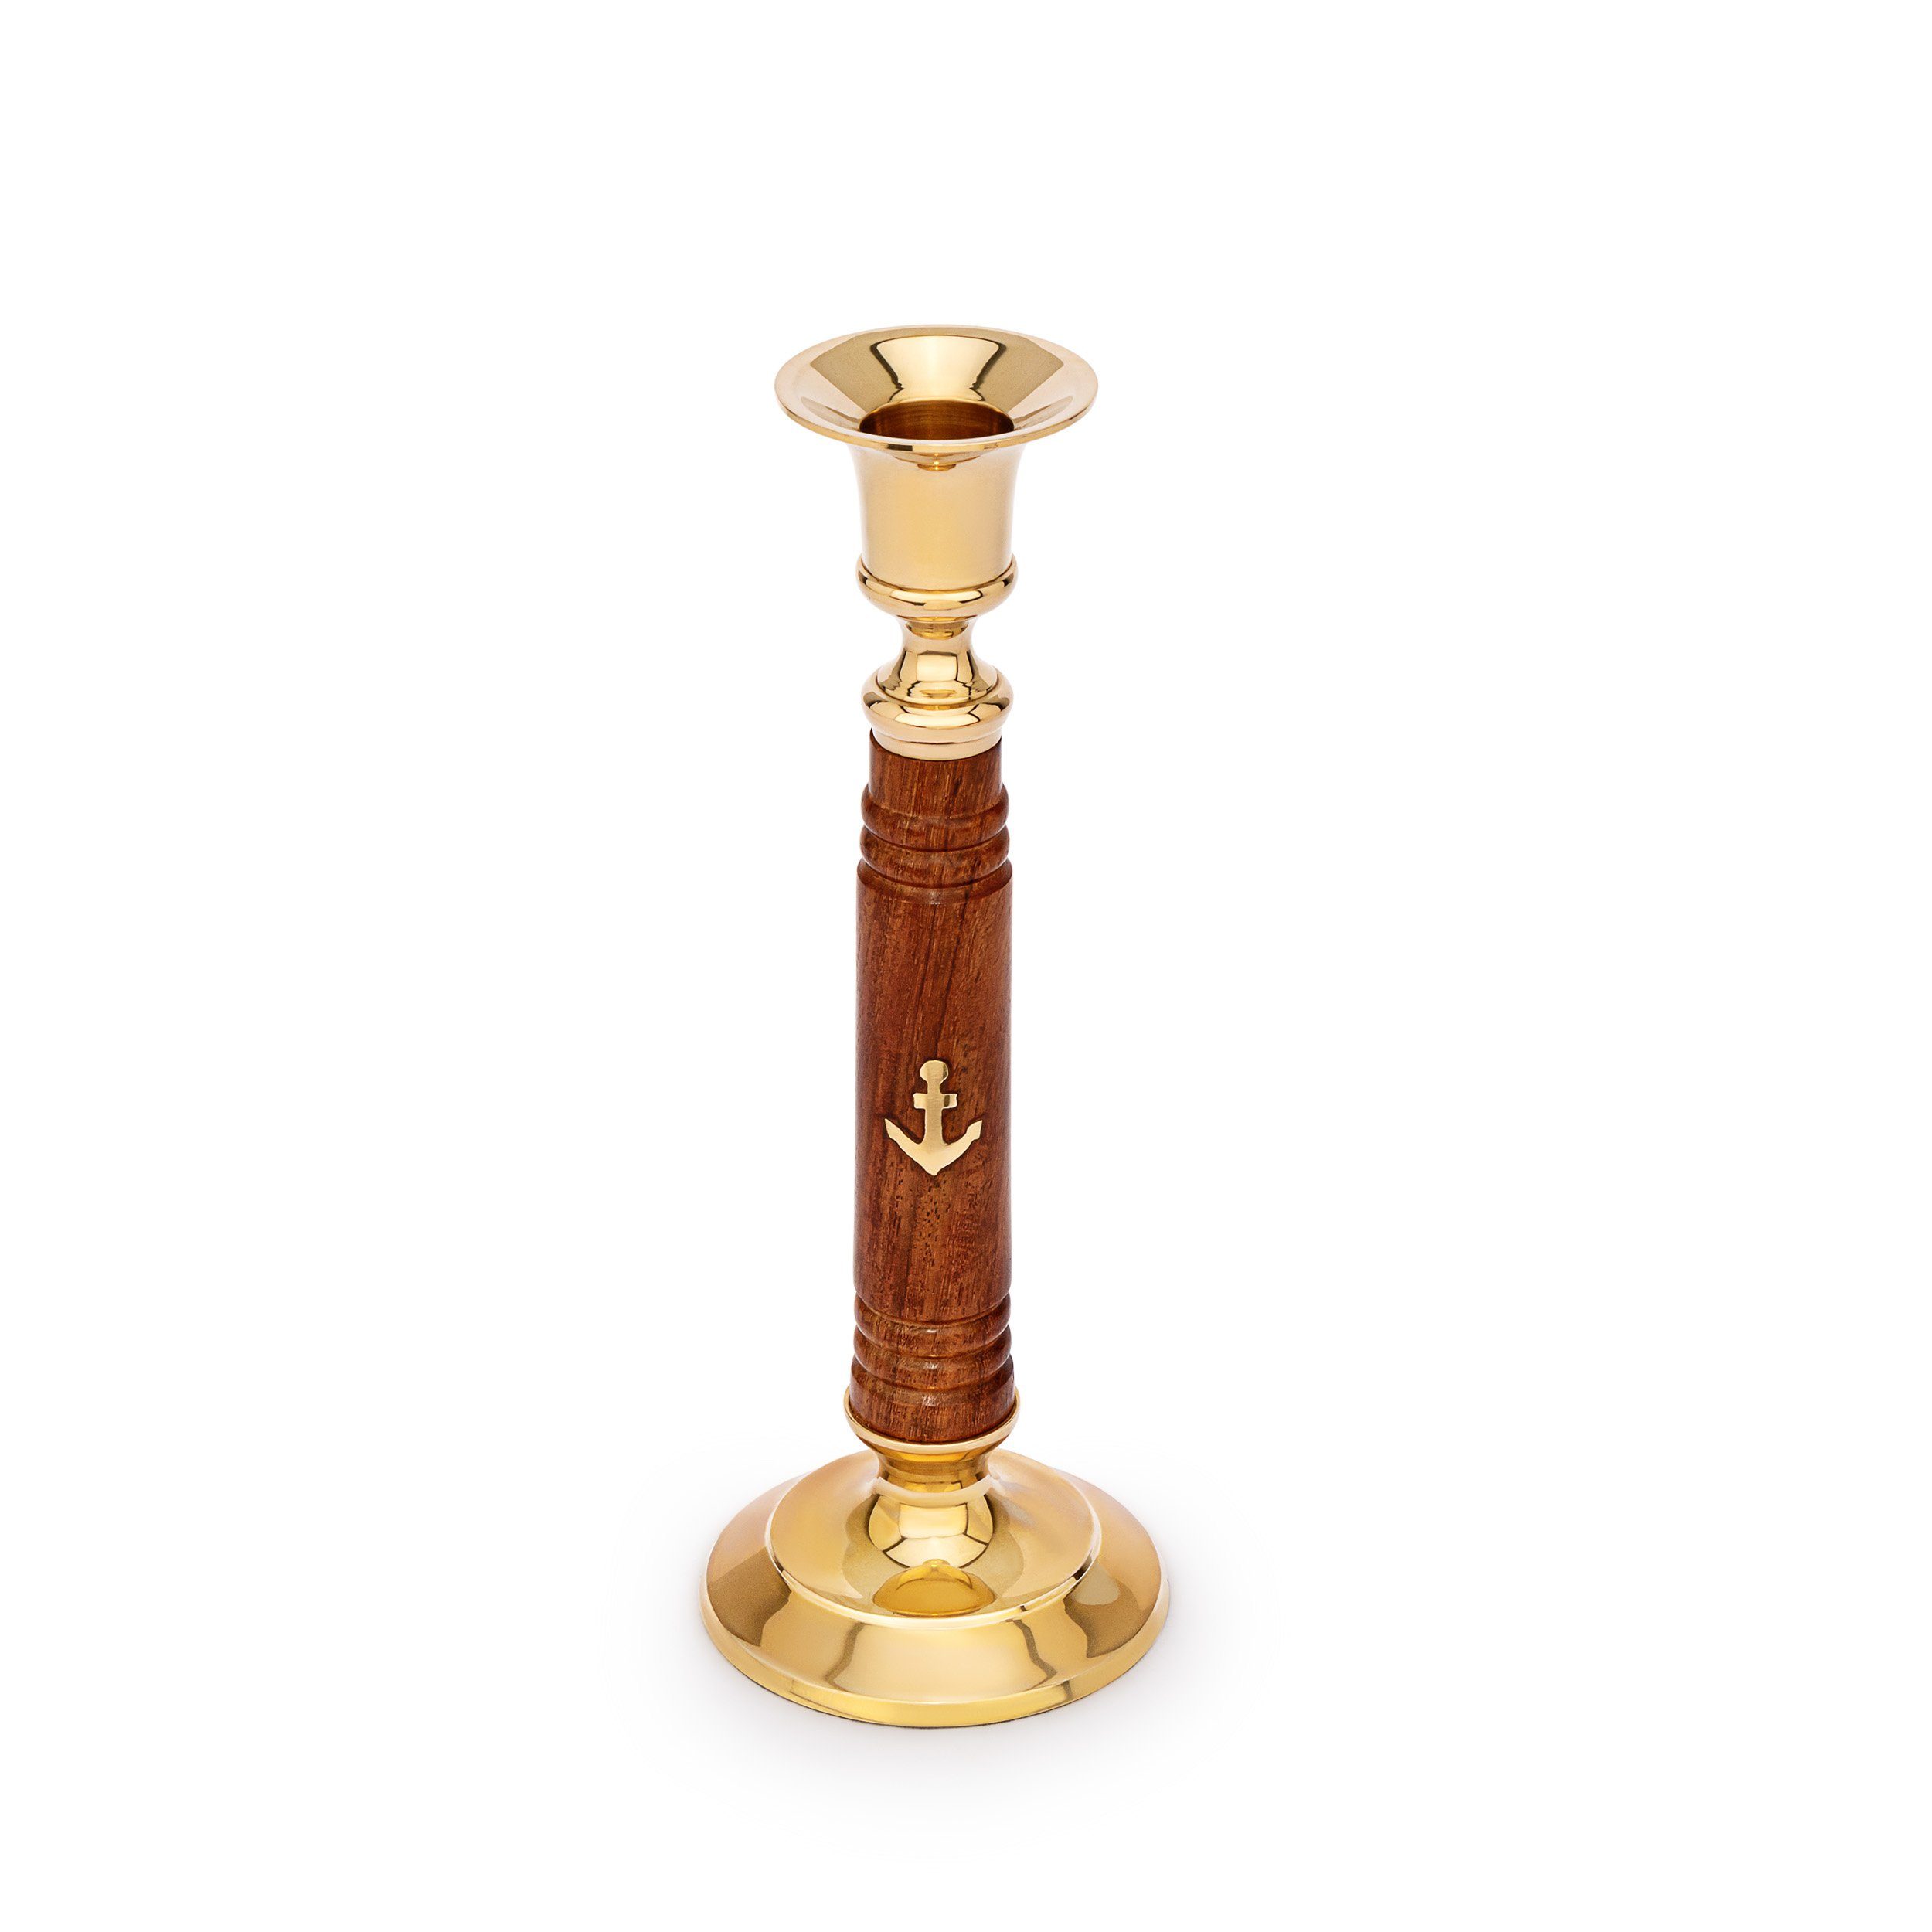 NKlaus Dekofigur Maritim Kerzenständer aus Holz und Messing gold 20cm hoch Vintage Kerz, Made in Germany